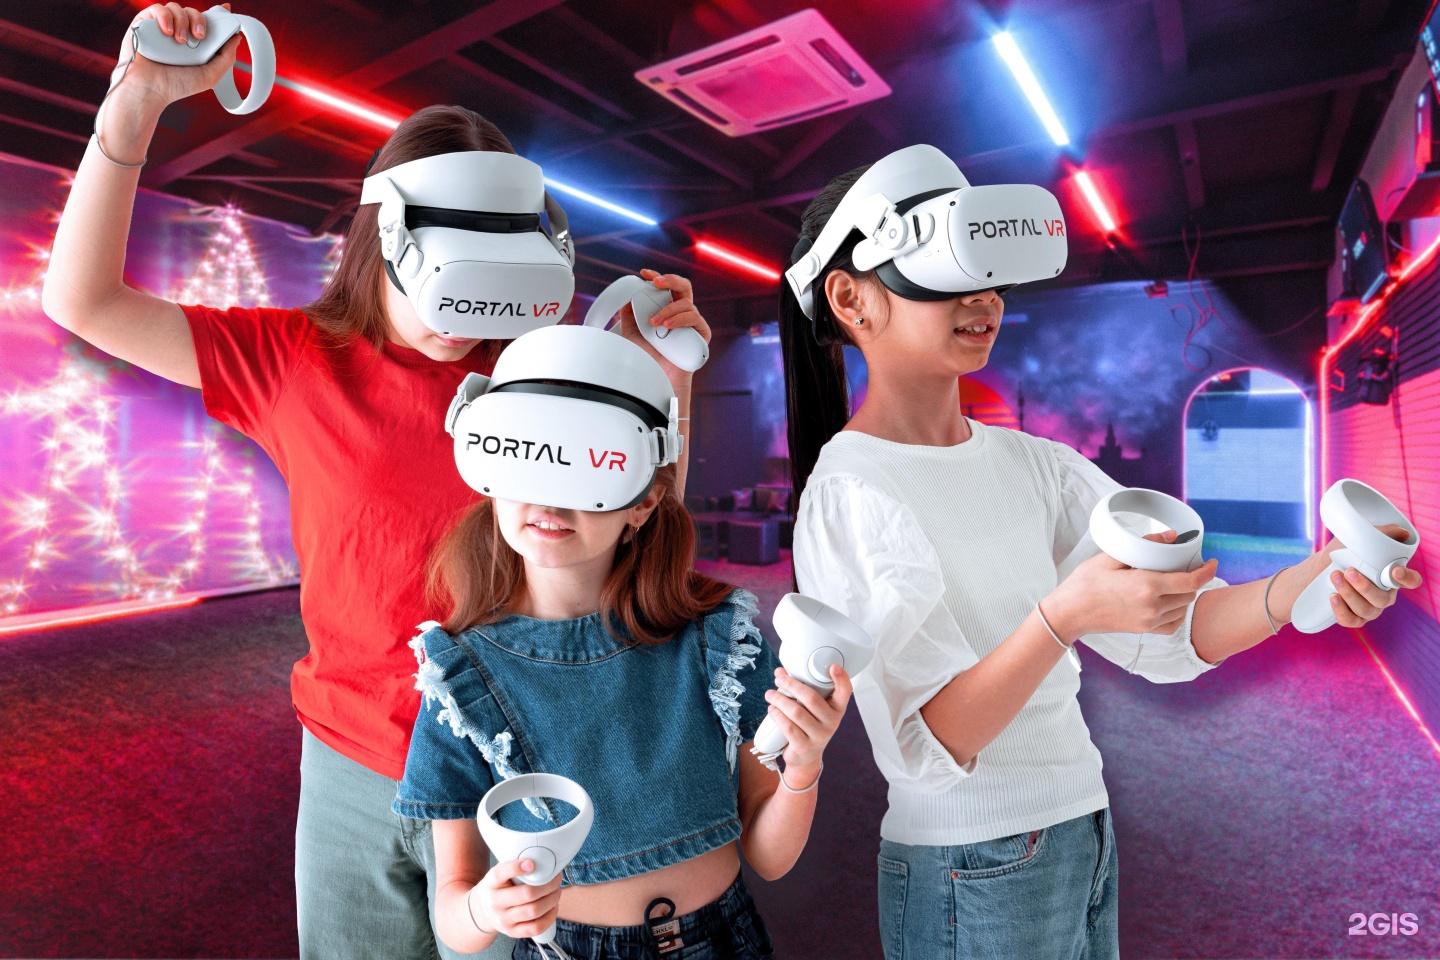 Vr москва играть. Portal VR, Москва, Нижний Сусальный переулок. Portal VR Благовещенск. Клуб виртуальной реальности Portal VR. Клуб виртуальной реальности для детей.